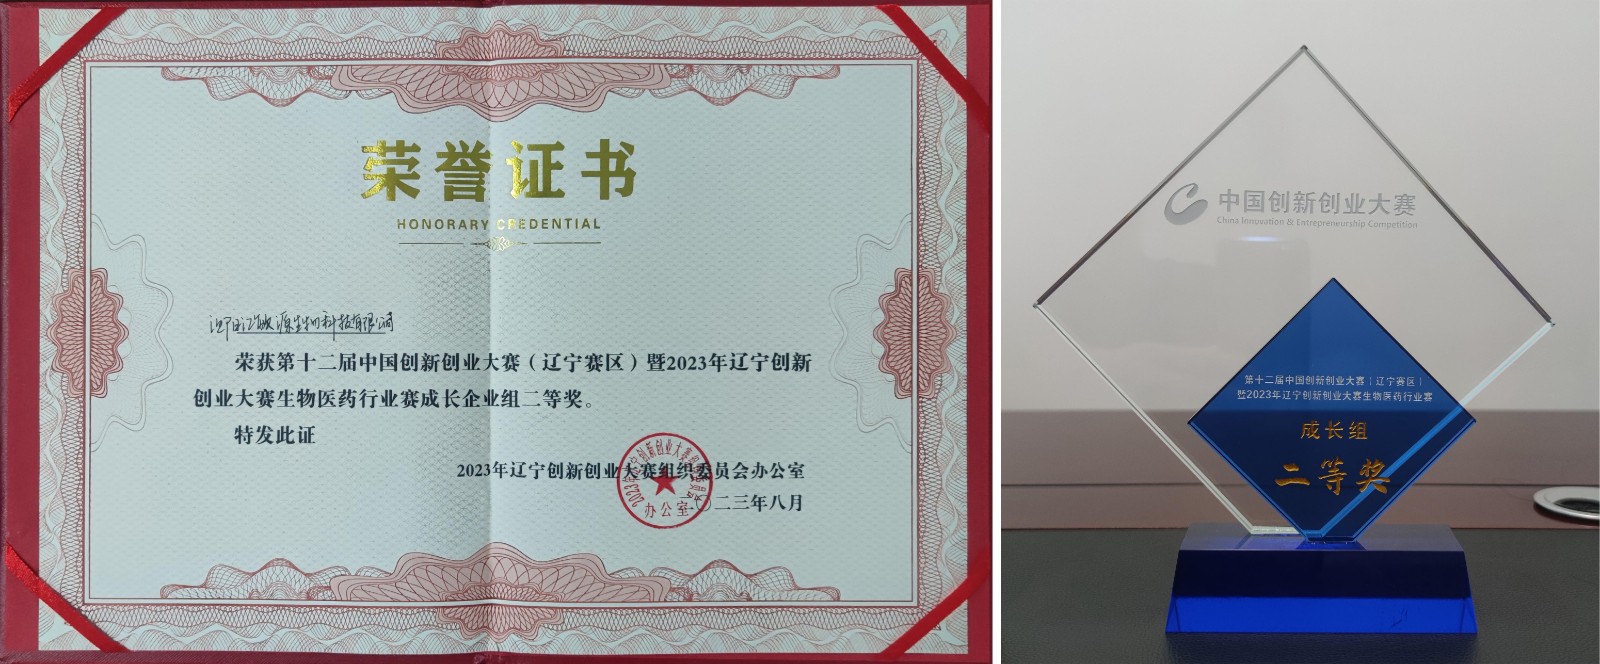 汇敏源生物荣获第十二届创新创业大赛辽宁赛区二等奖